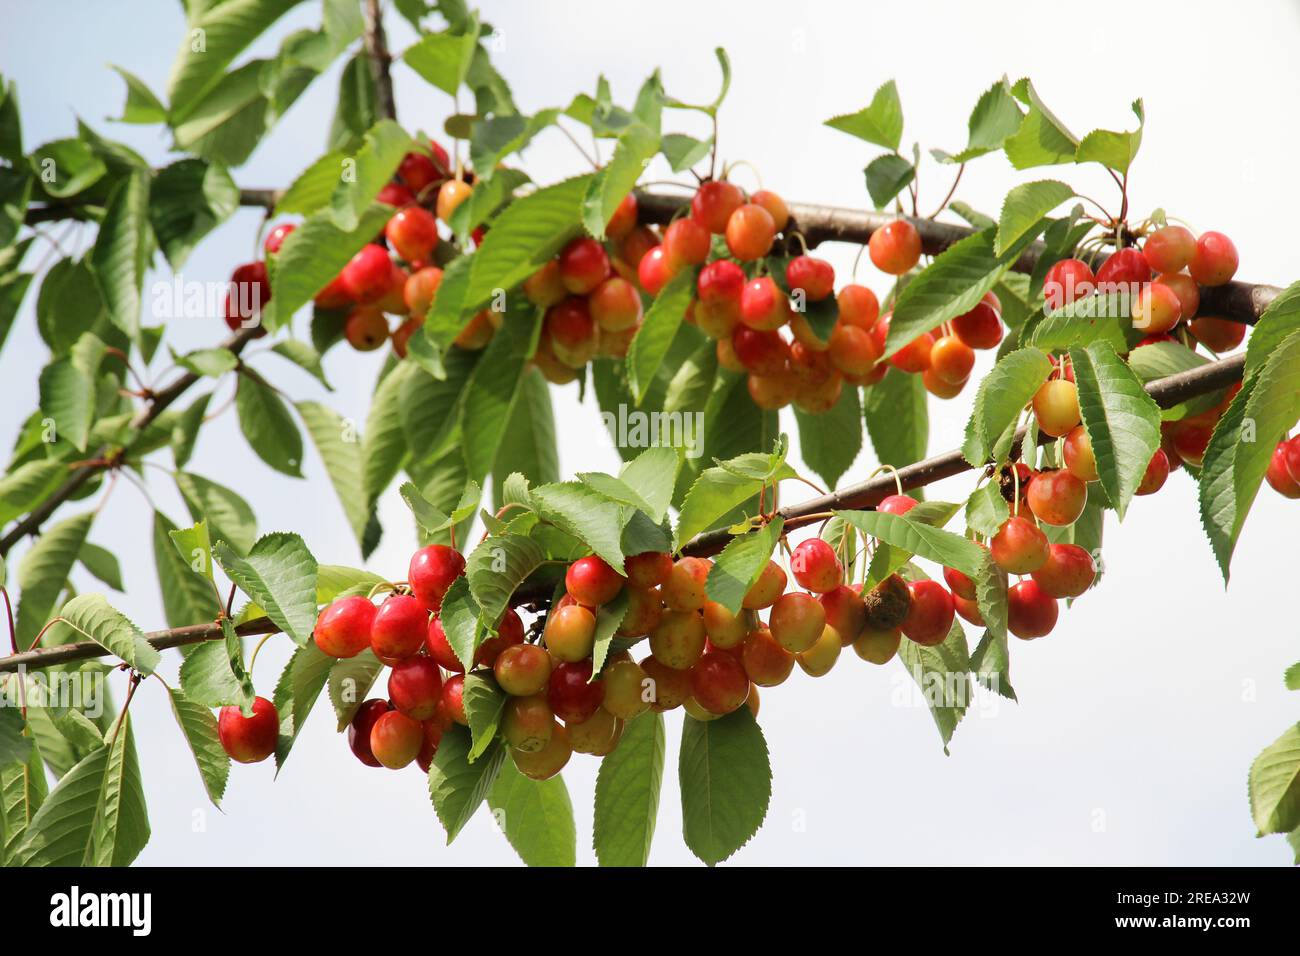 Les baies de cerise douce (Prunus avium) mûrissent sur une branche d'arbre Banque D'Images